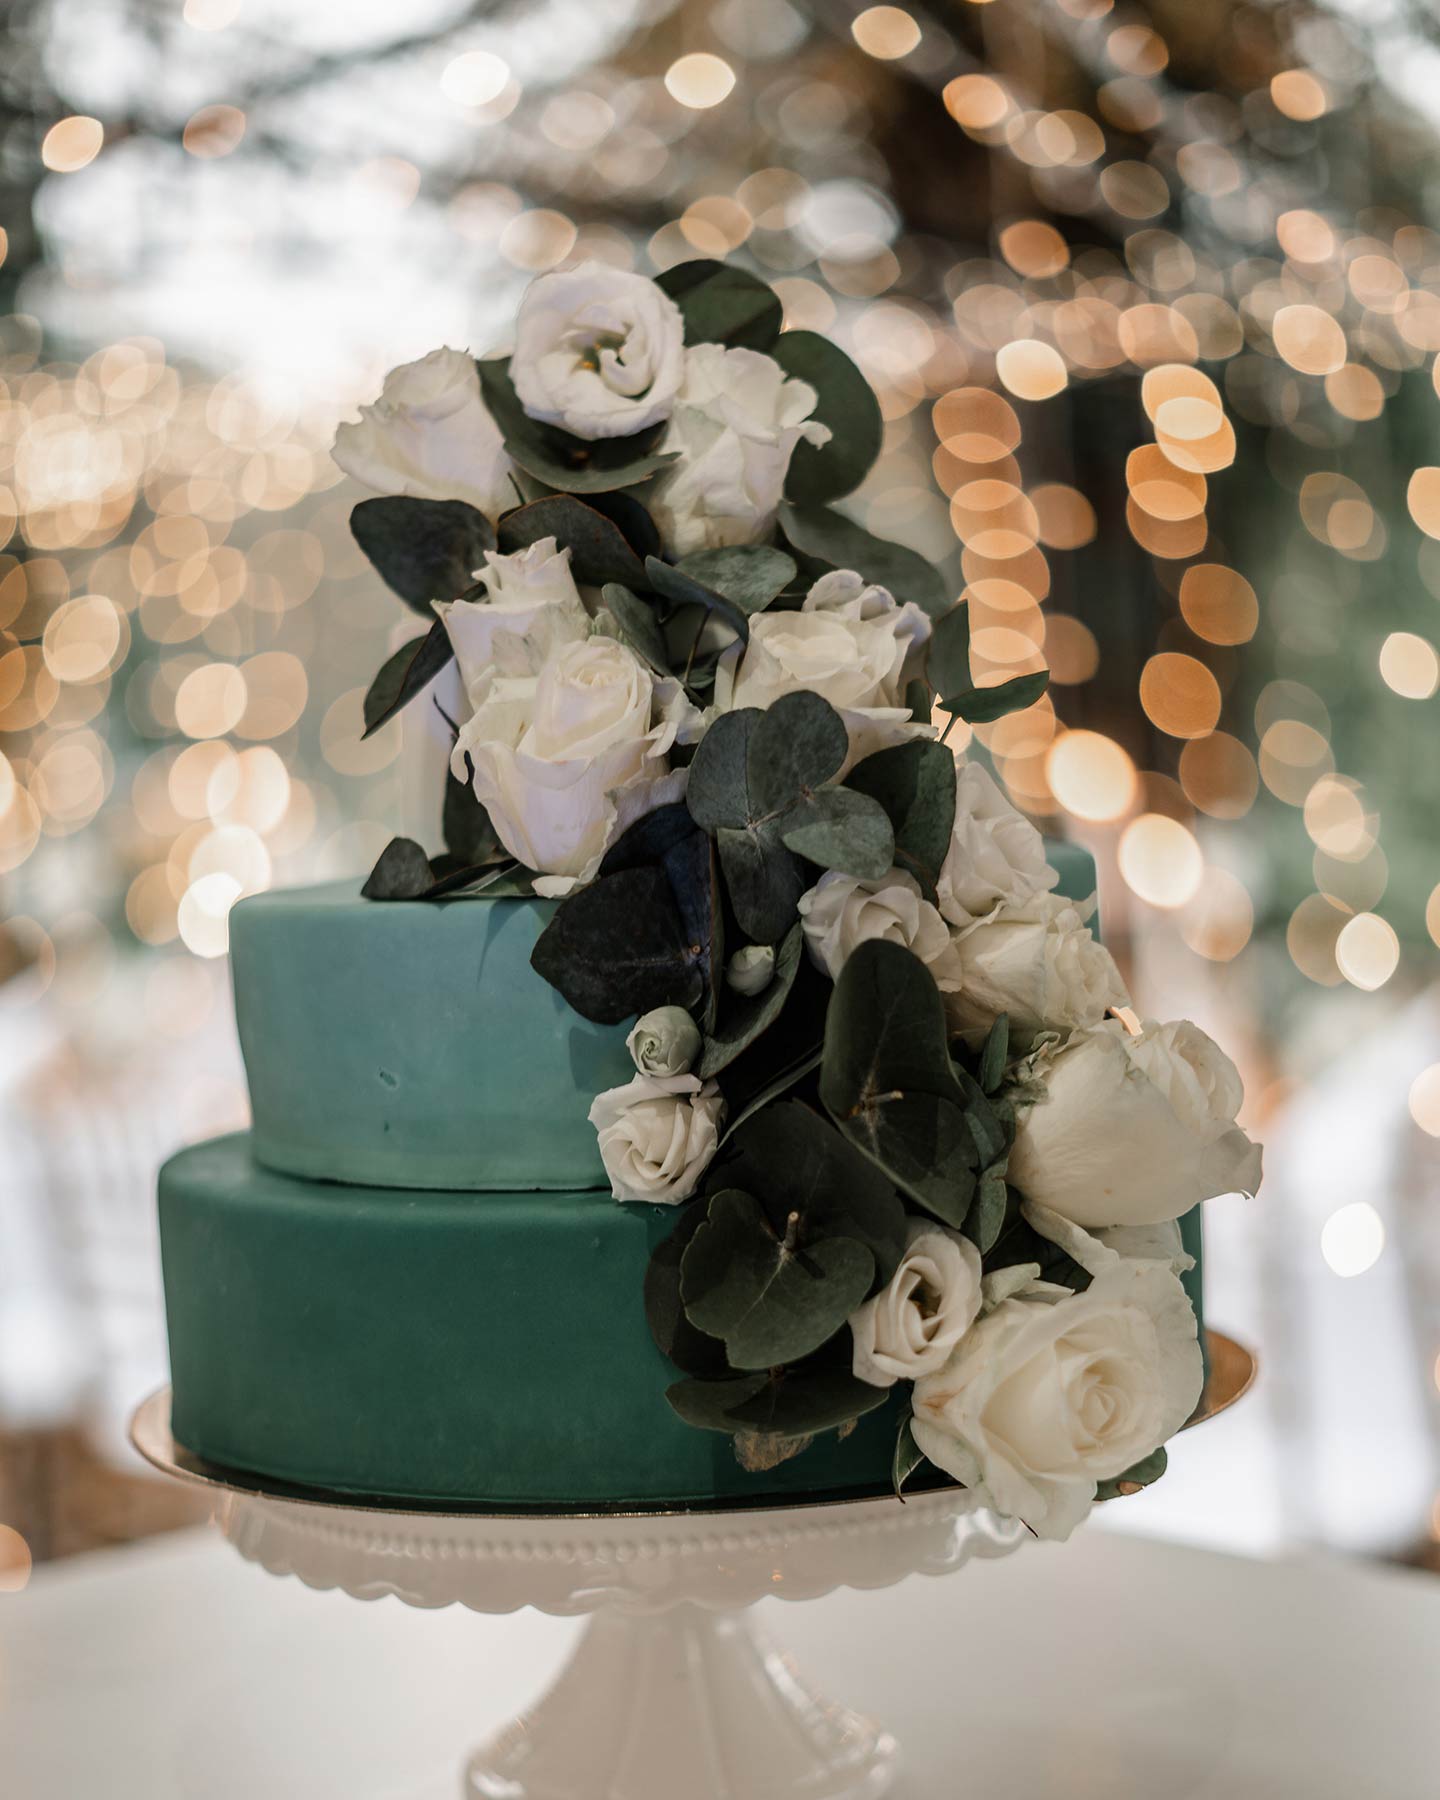 Die Hochzeitstorte ist in Gänze zu sehen: sie besteht aus zwei Stöcken in Grün-Türkistönen, geschmückt mit Blüten in weiß und grünen Blättern. Im Hintergrund ist das Lichtermeer der Lichterketten zu sehen.